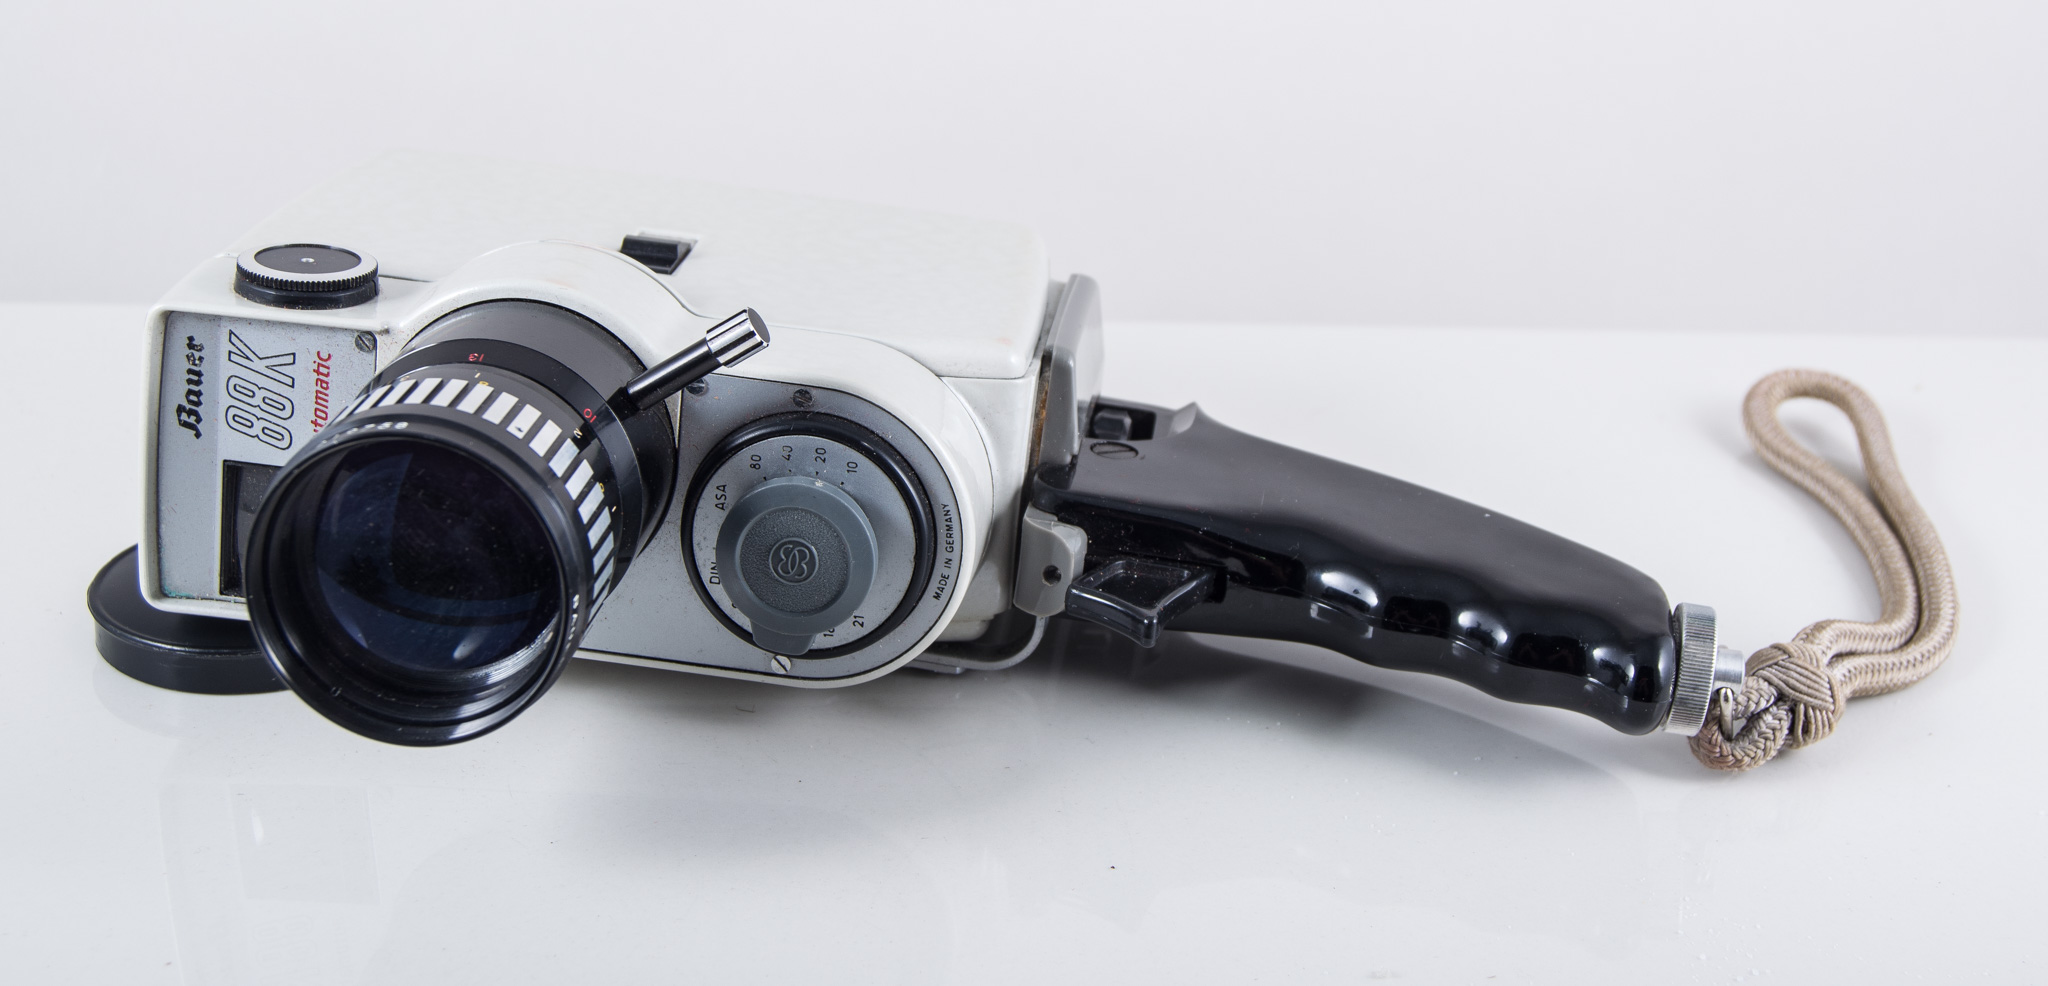 Bauer 88k automatic cine camera, in a pigskin case.